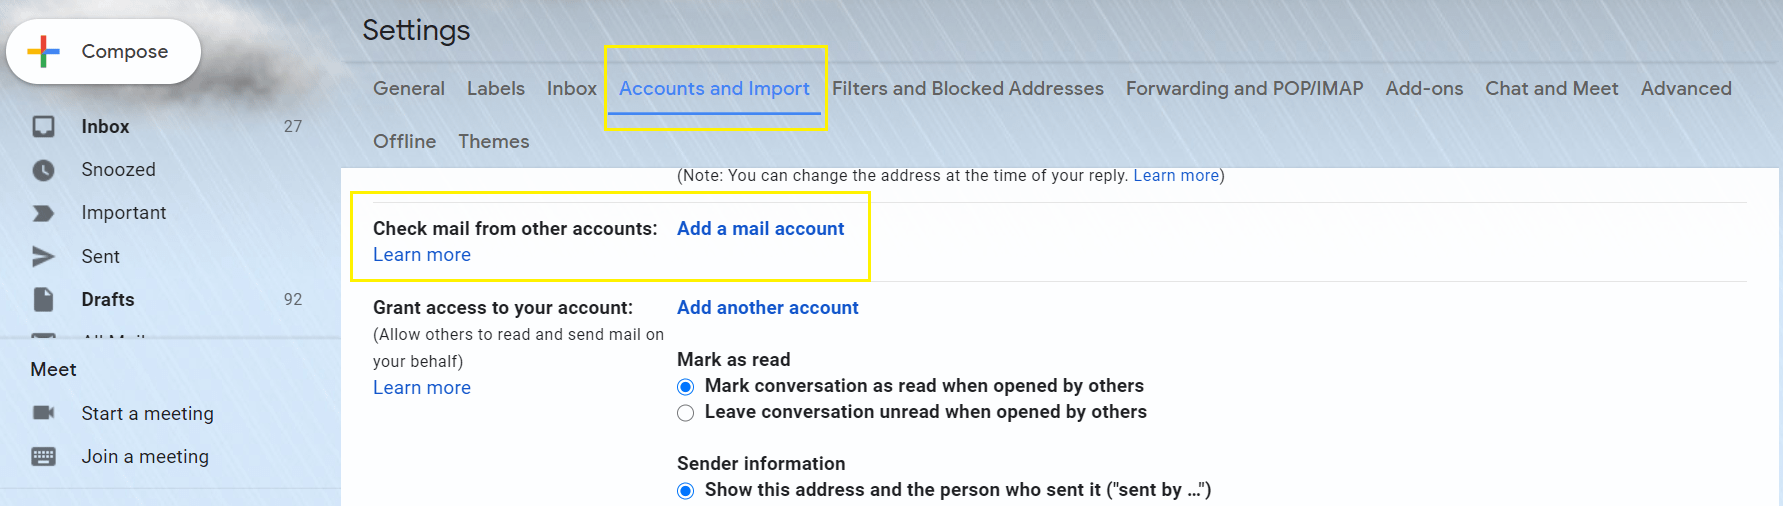 將您的帶有個性化域的電子郵件連接到Gmail。